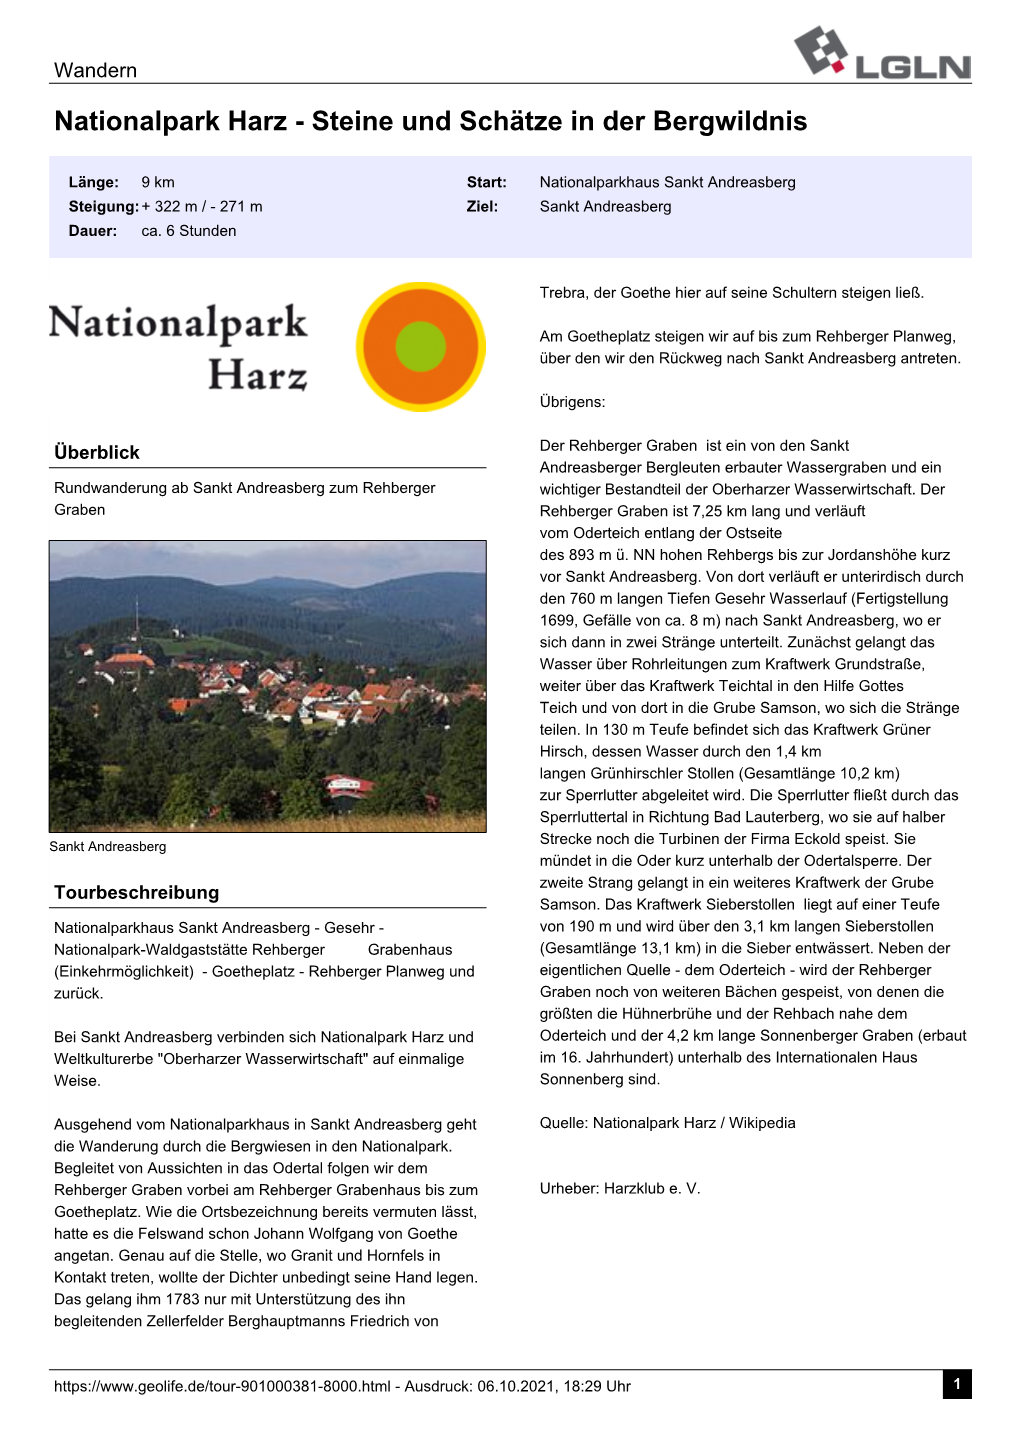 Nationalpark Harz - Steine Und Schätze in Der Bergwildnis